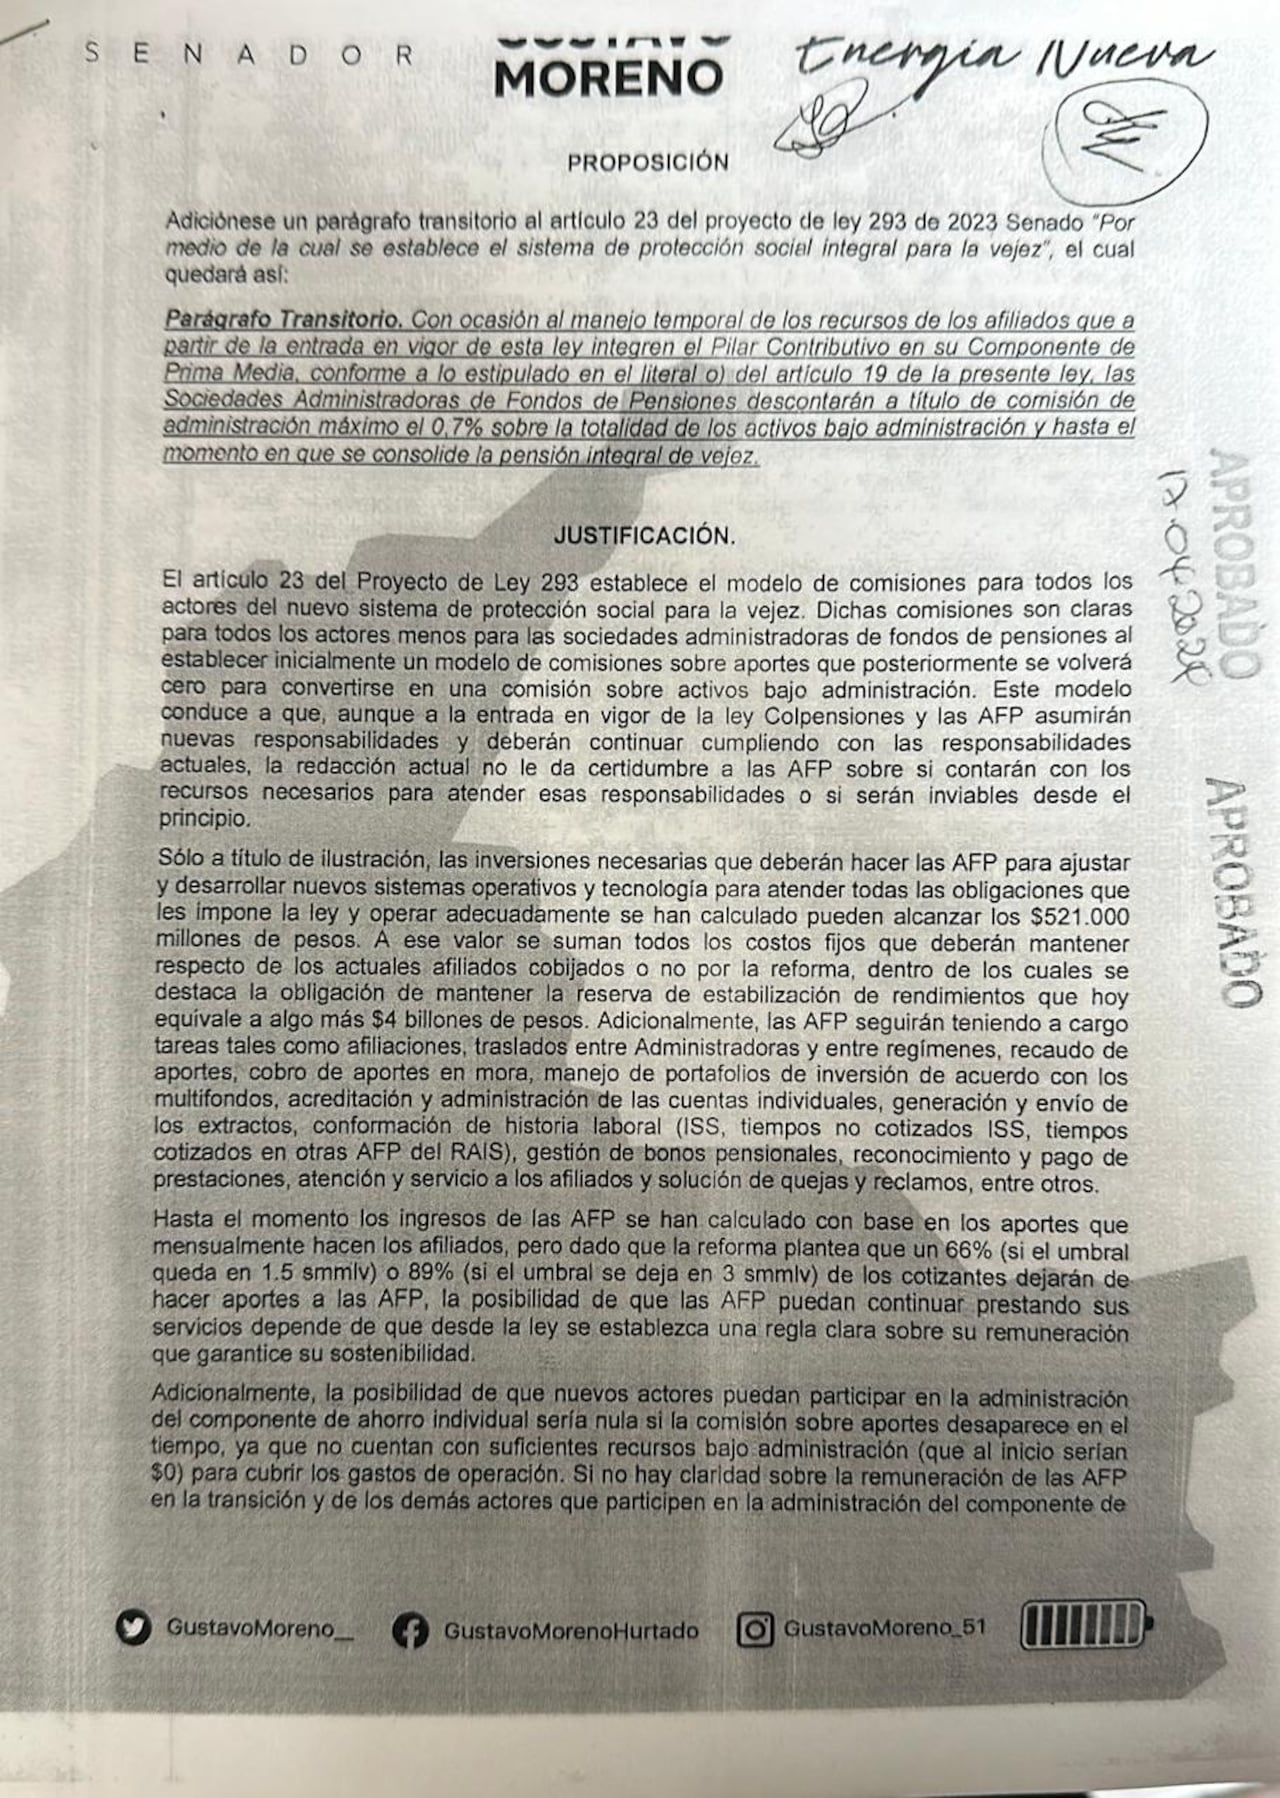 Proposición radicada por el senador Gustavo Moreno y que fue realizada por Asofondos para favorecer sus intereses particulares